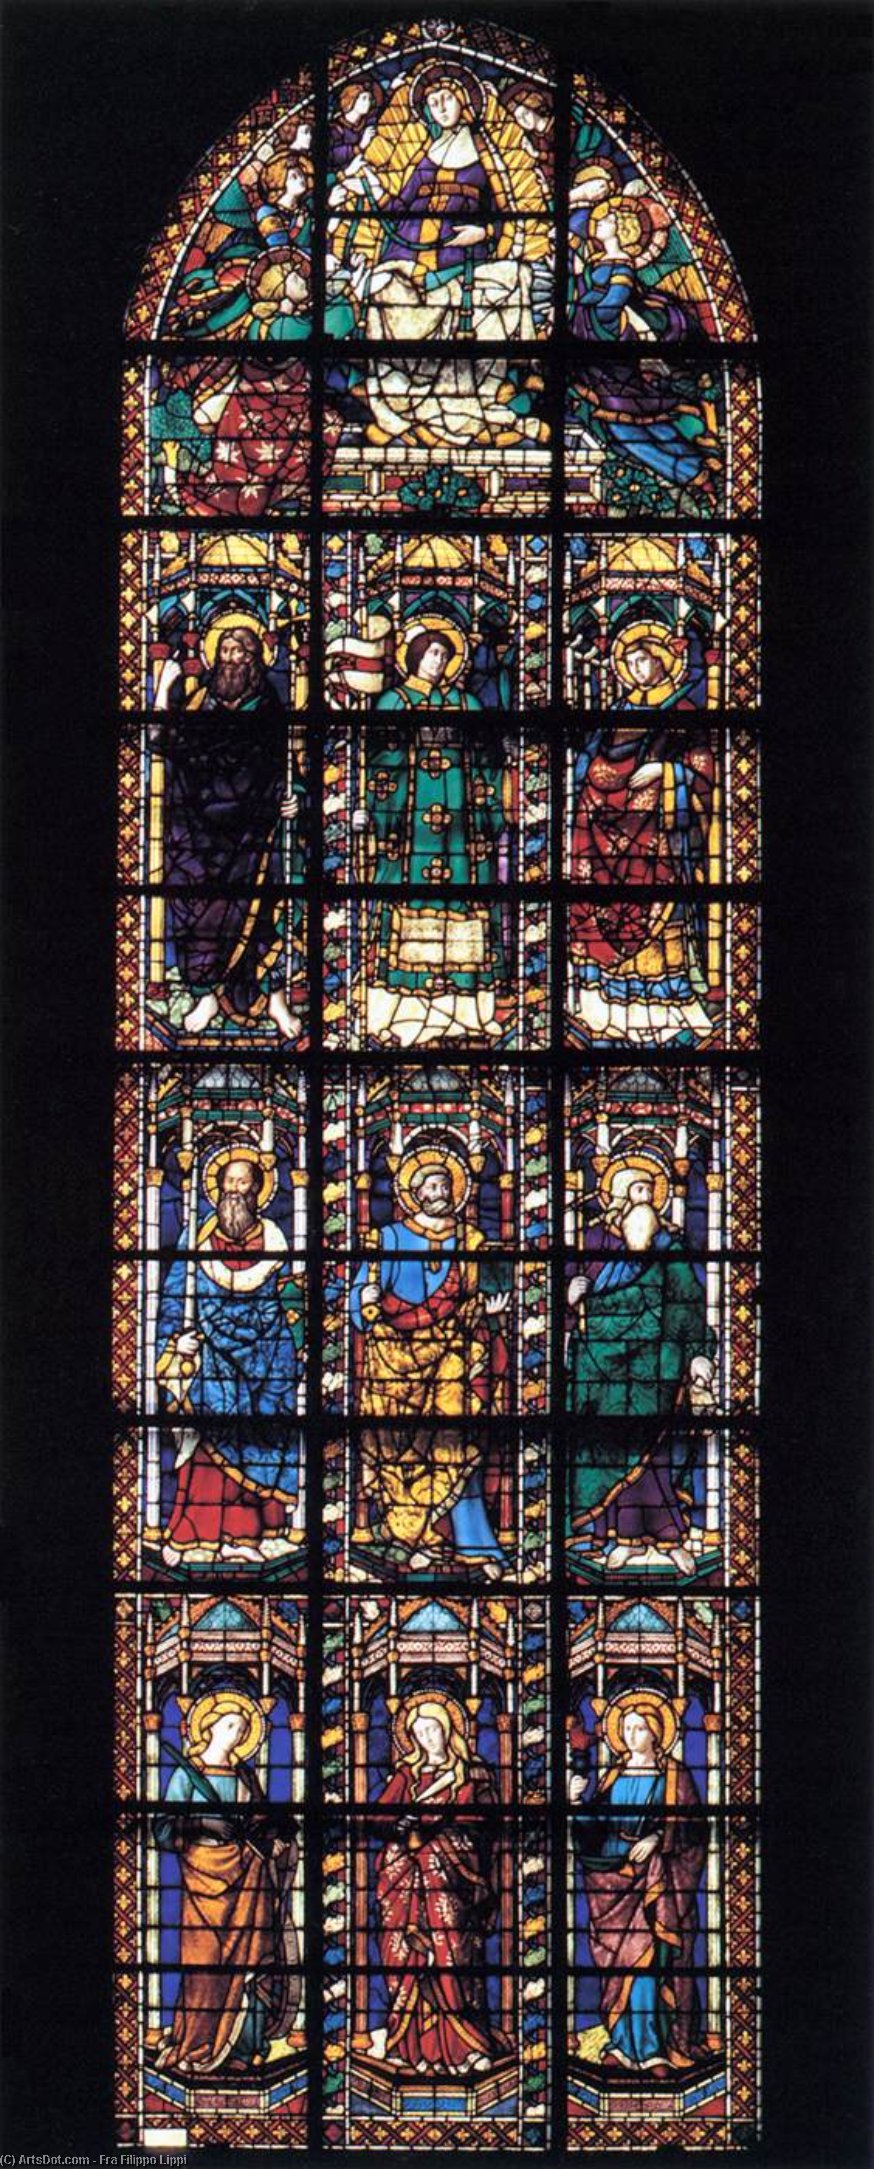 Wikoo.org - موسوعة الفنون الجميلة - اللوحة، العمل الفني Fra Filippo Lippi - Choir chapel window